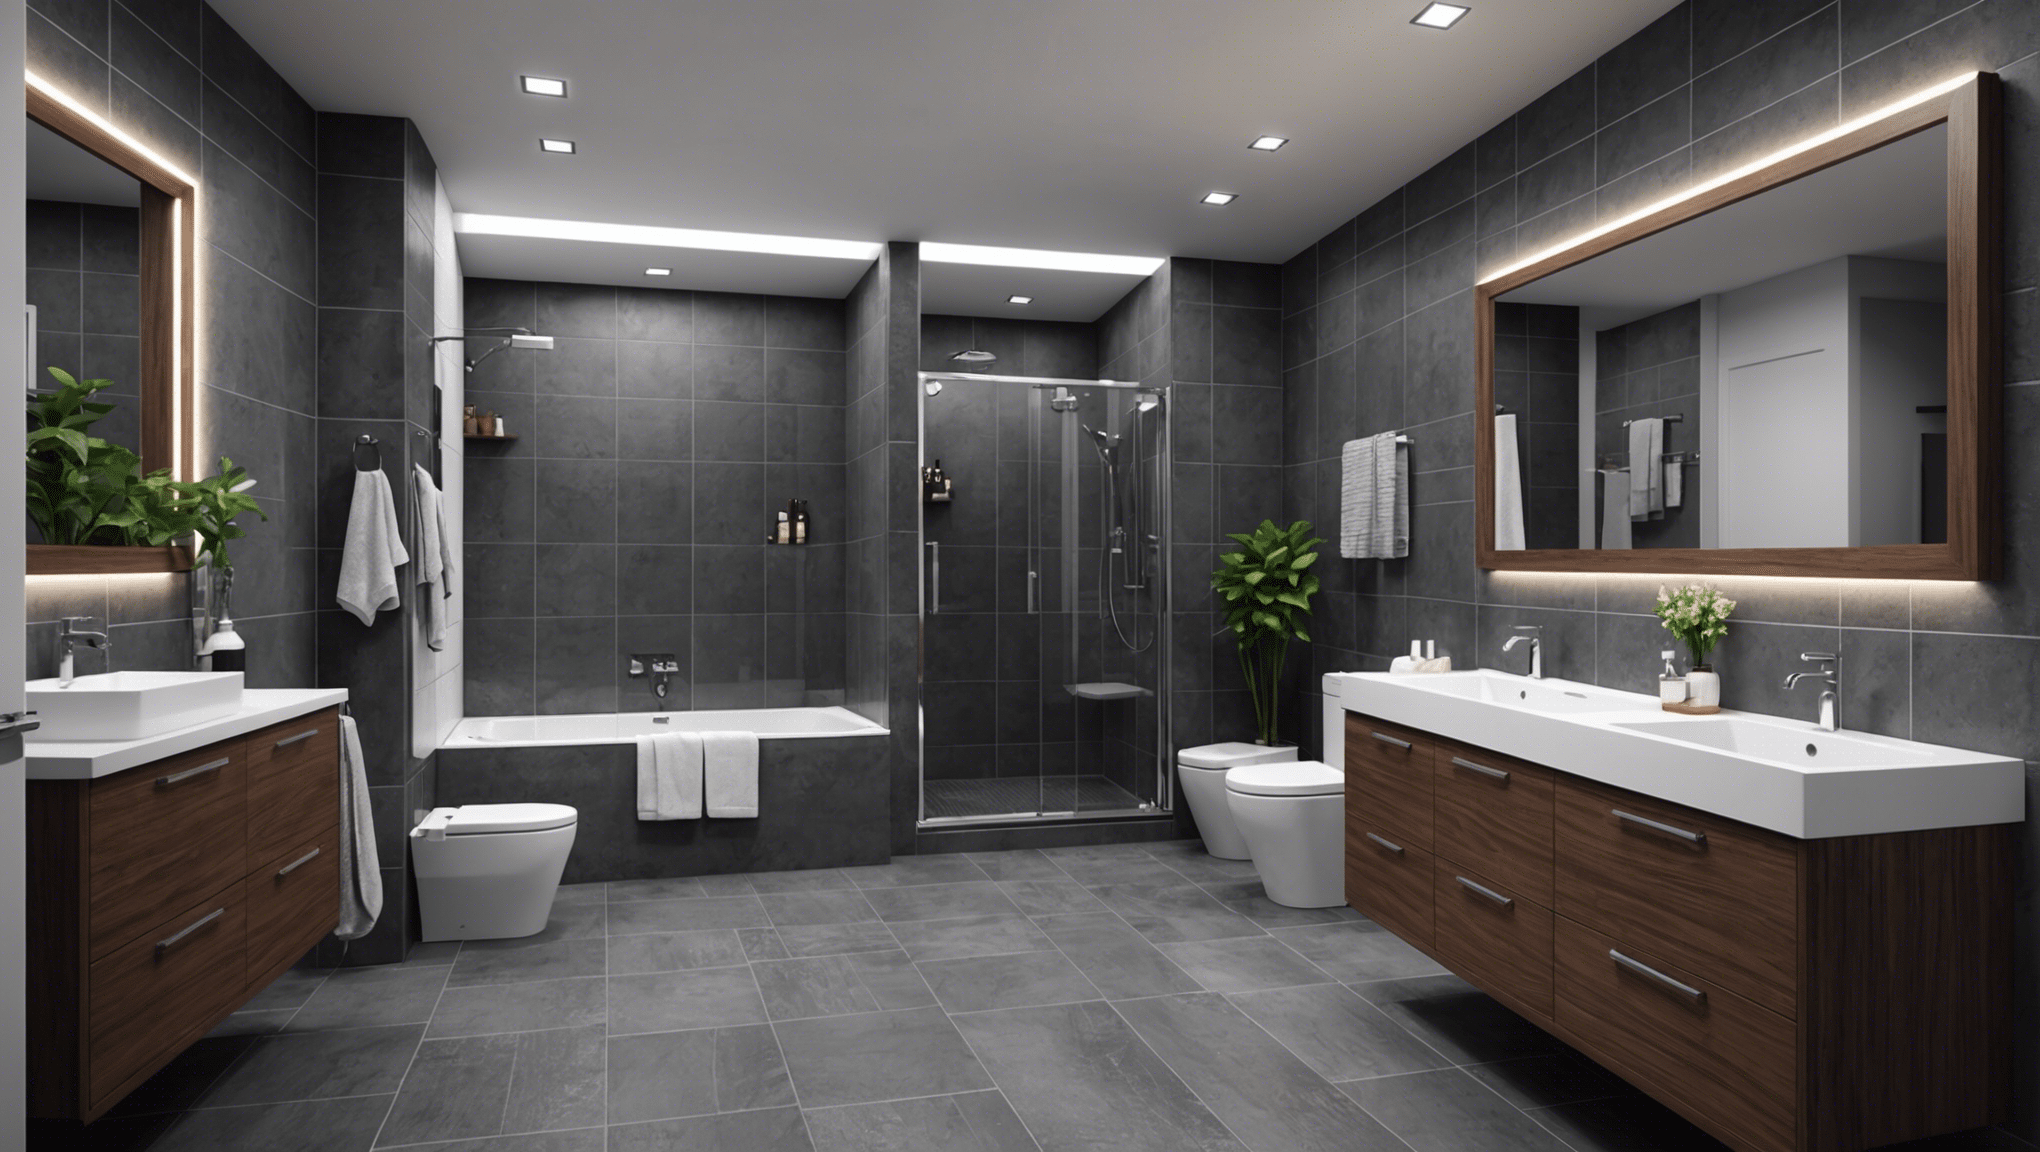 découvrez les meilleures astuces pour créer une salle de bain moderne dans votre maison. des idées de décoration, d'aménagement, et de tendances pour une salle de bain contemporaine.